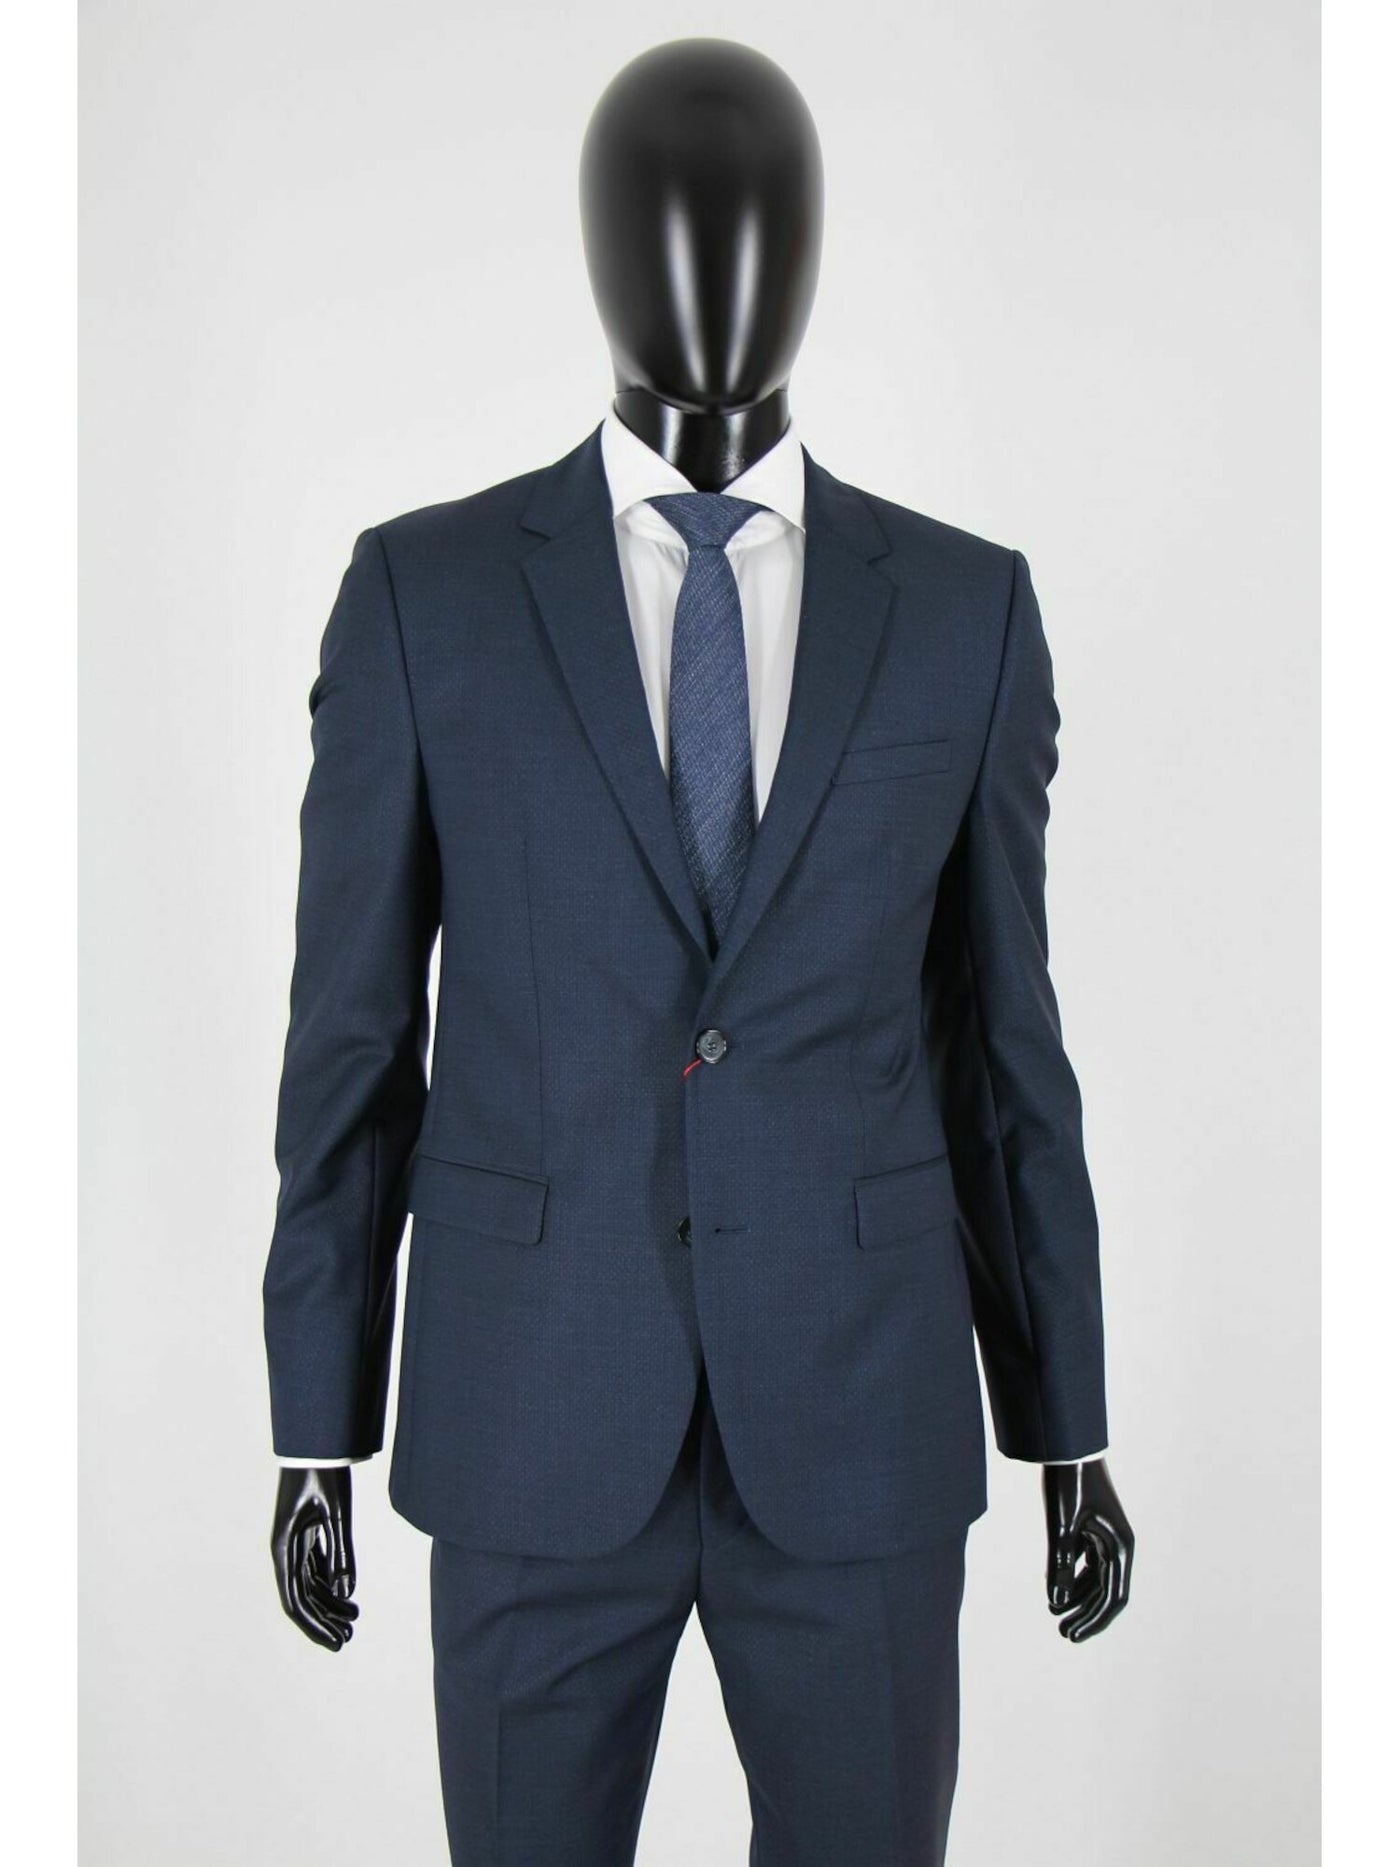 HUGO BOSS Mens Navy Single Breasted, Extra Slim Fit Wool Blend Suit Separate Blazer Jacket 40R